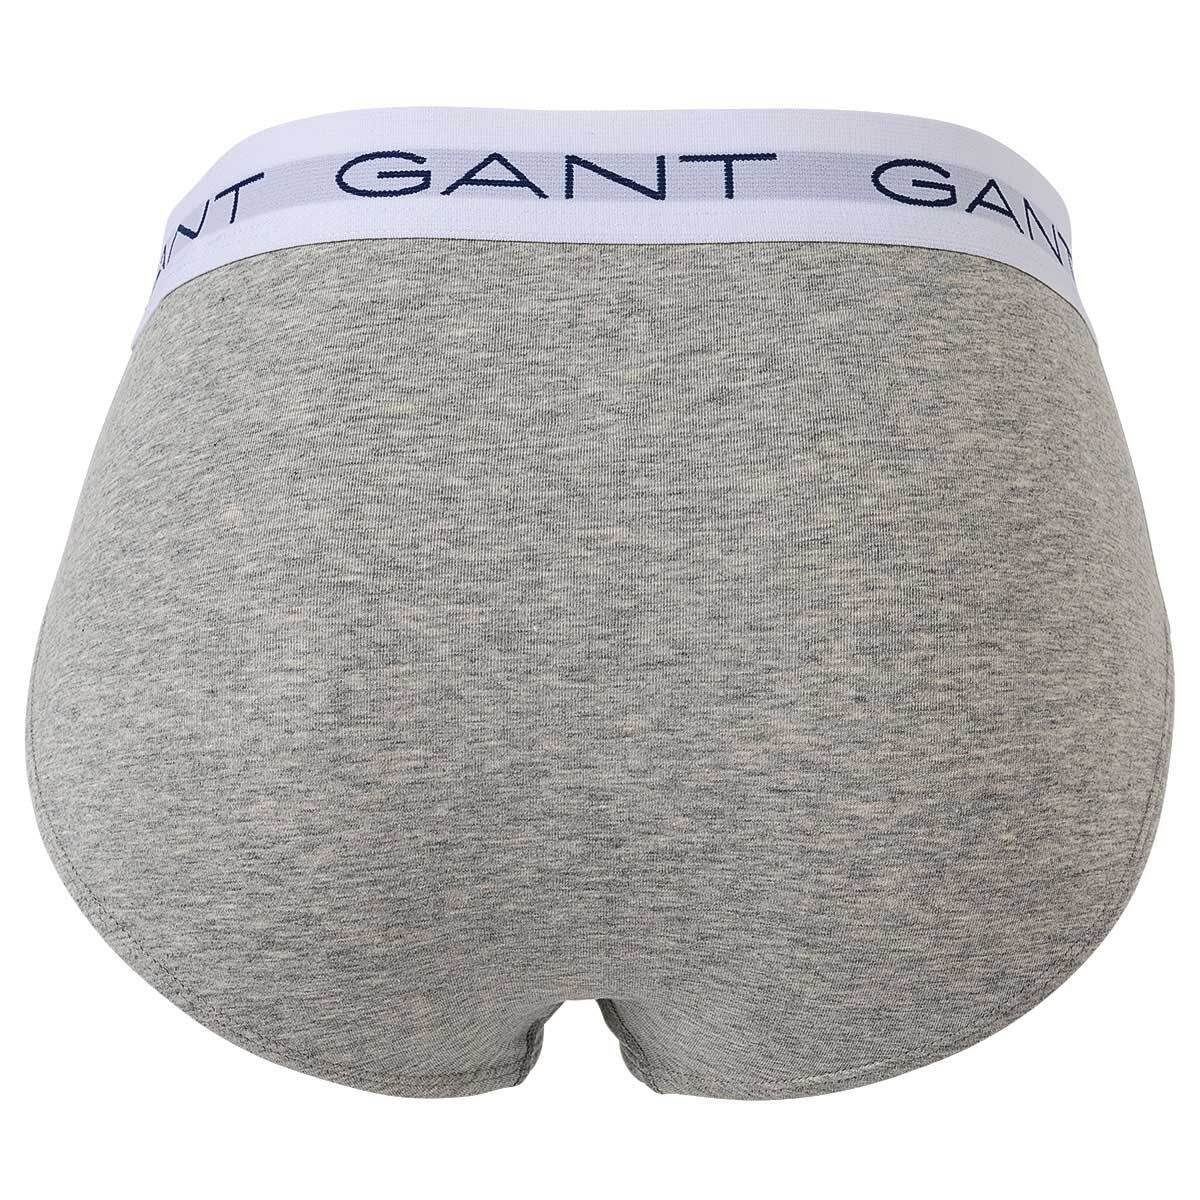 Gant Herren Cotton Briefs, Slips, Pack Grau 3er - Stretch Slip